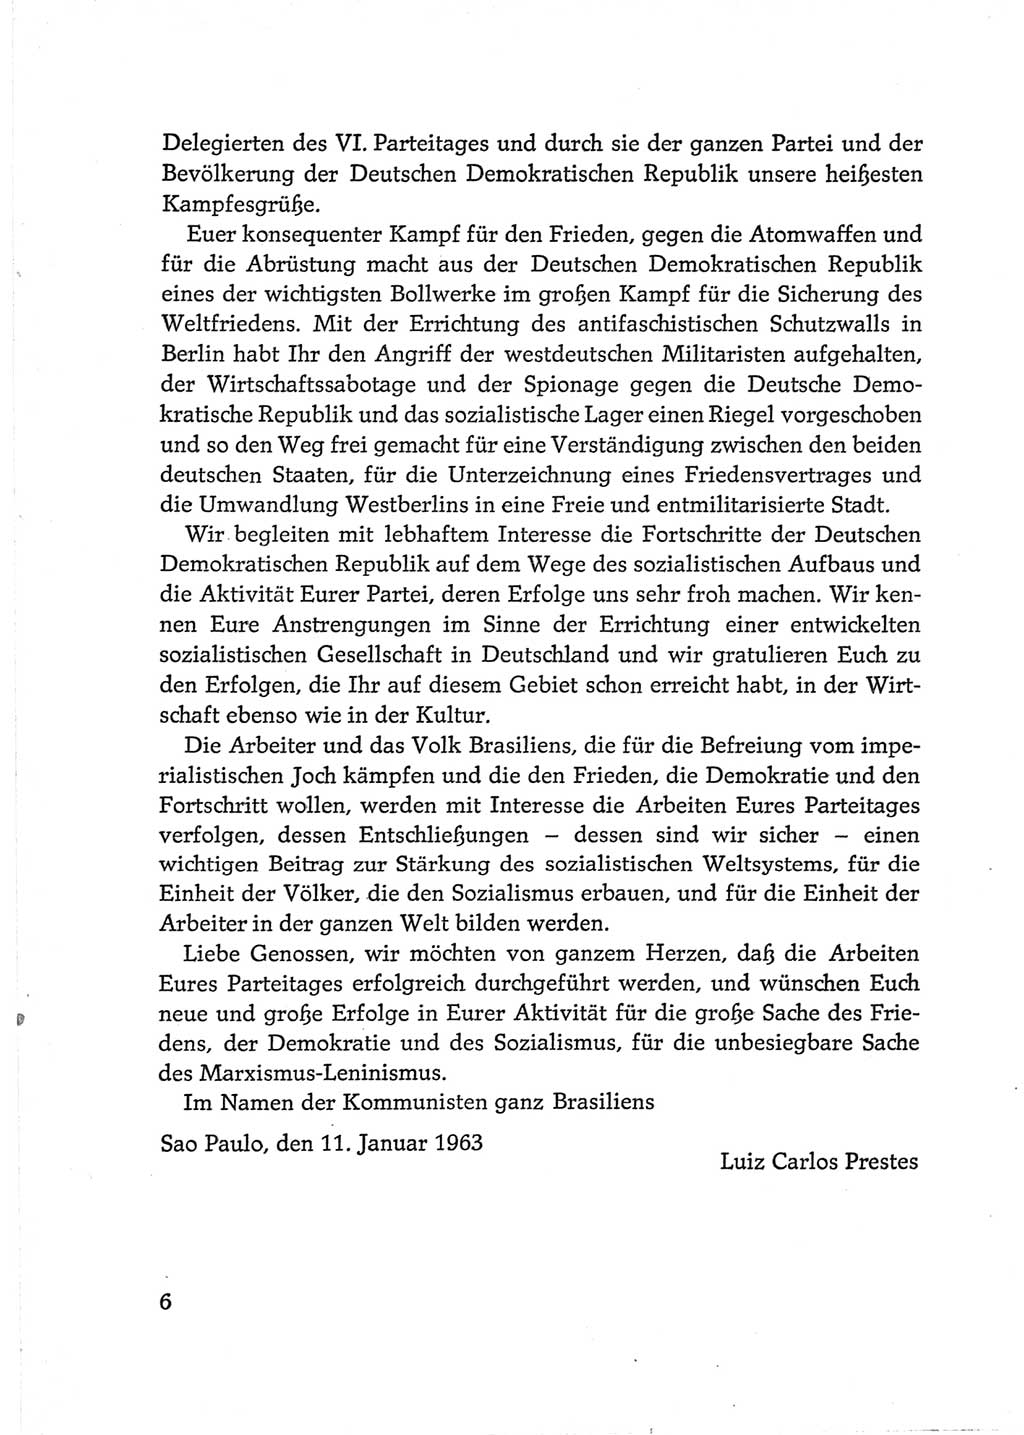 Protokoll der Verhandlungen des Ⅵ. Parteitages der Sozialistischen Einheitspartei Deutschlands (SED) [Deutsche Demokratische Republik (DDR)] 1963, Band Ⅲ, Seite 6 (Prot. Verh. Ⅵ. PT SED DDR 1963, Bd. Ⅲ, S. 6)